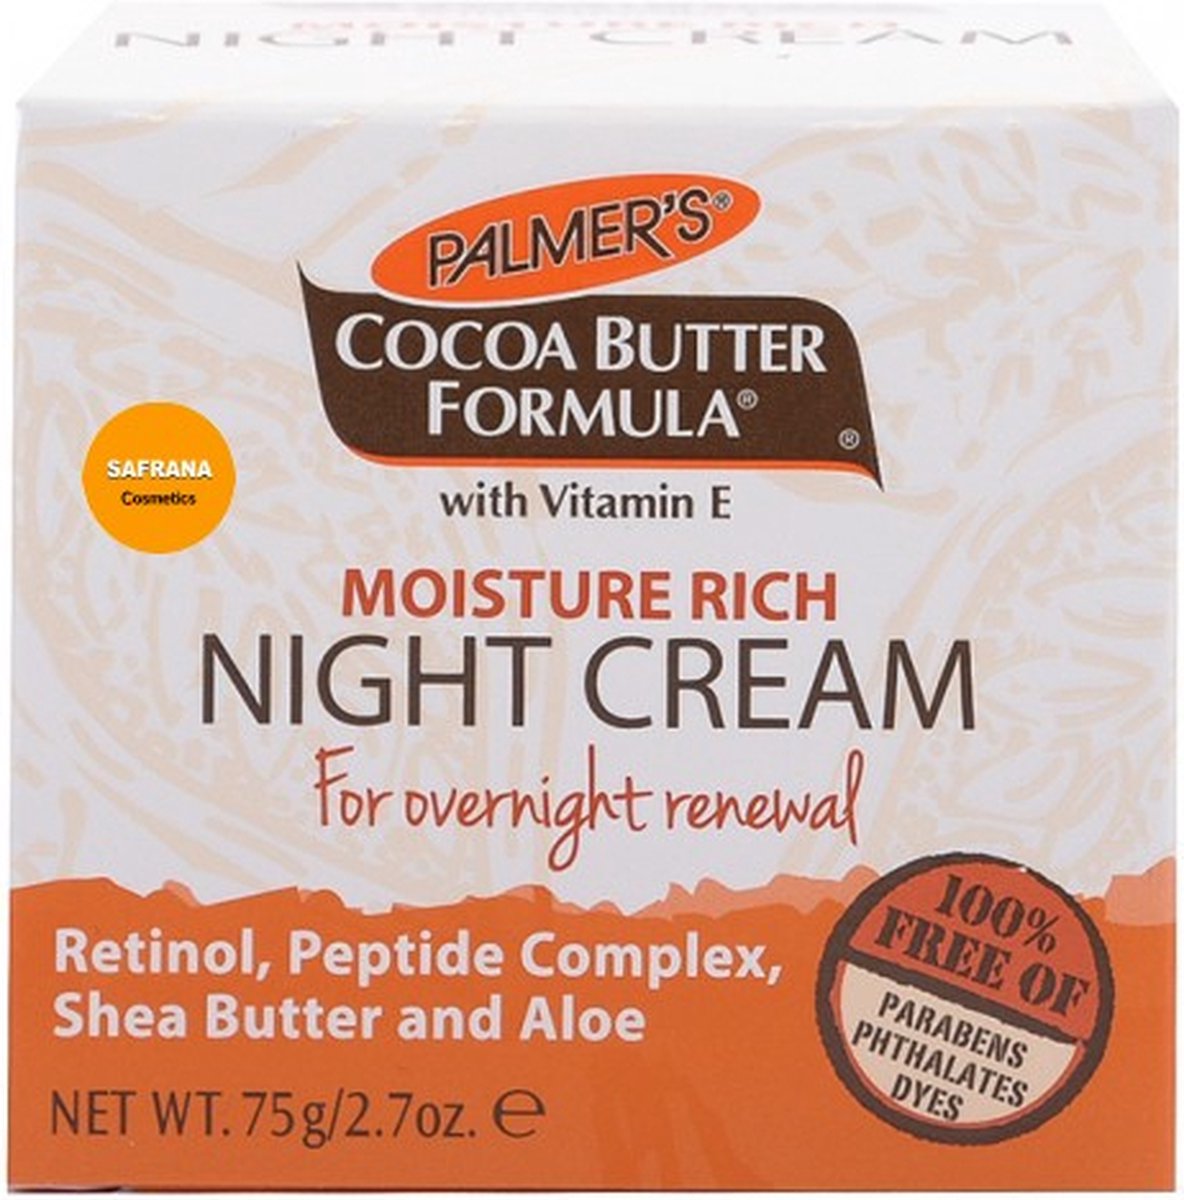 Palmer's Cocoa Butter Formula Facial Night Cream